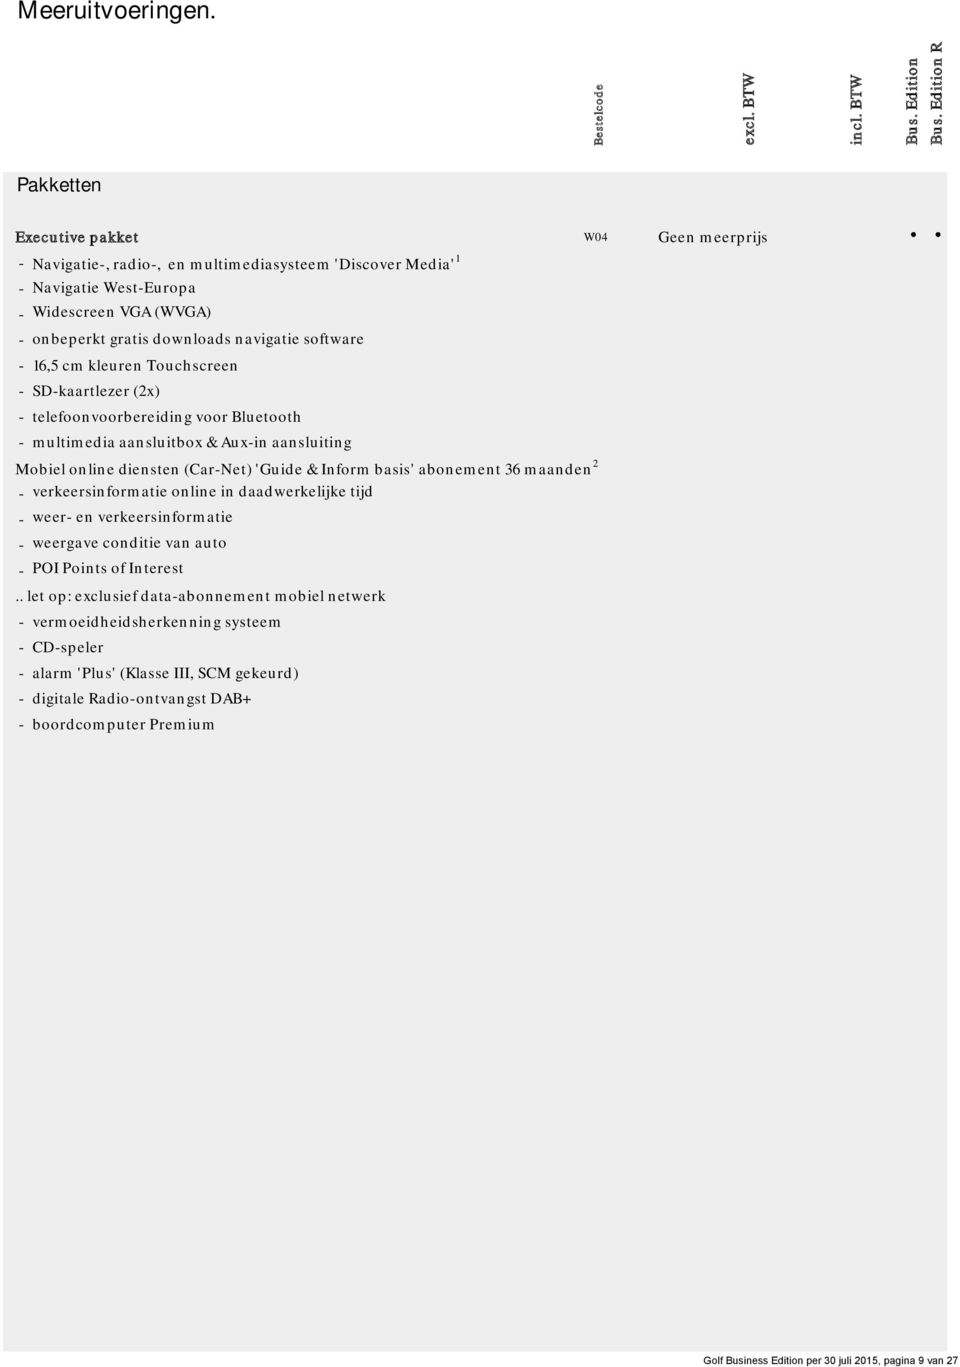 software - 16,5 cm kleuren Touchscreen - SD-kaartlezer (2x) - telefoonvoorbereiding voor Bluetooth - multimedia aansluitbox & Aux-in aansluiting Mobiel online diensten (Car-Net) 'Guide & Inform